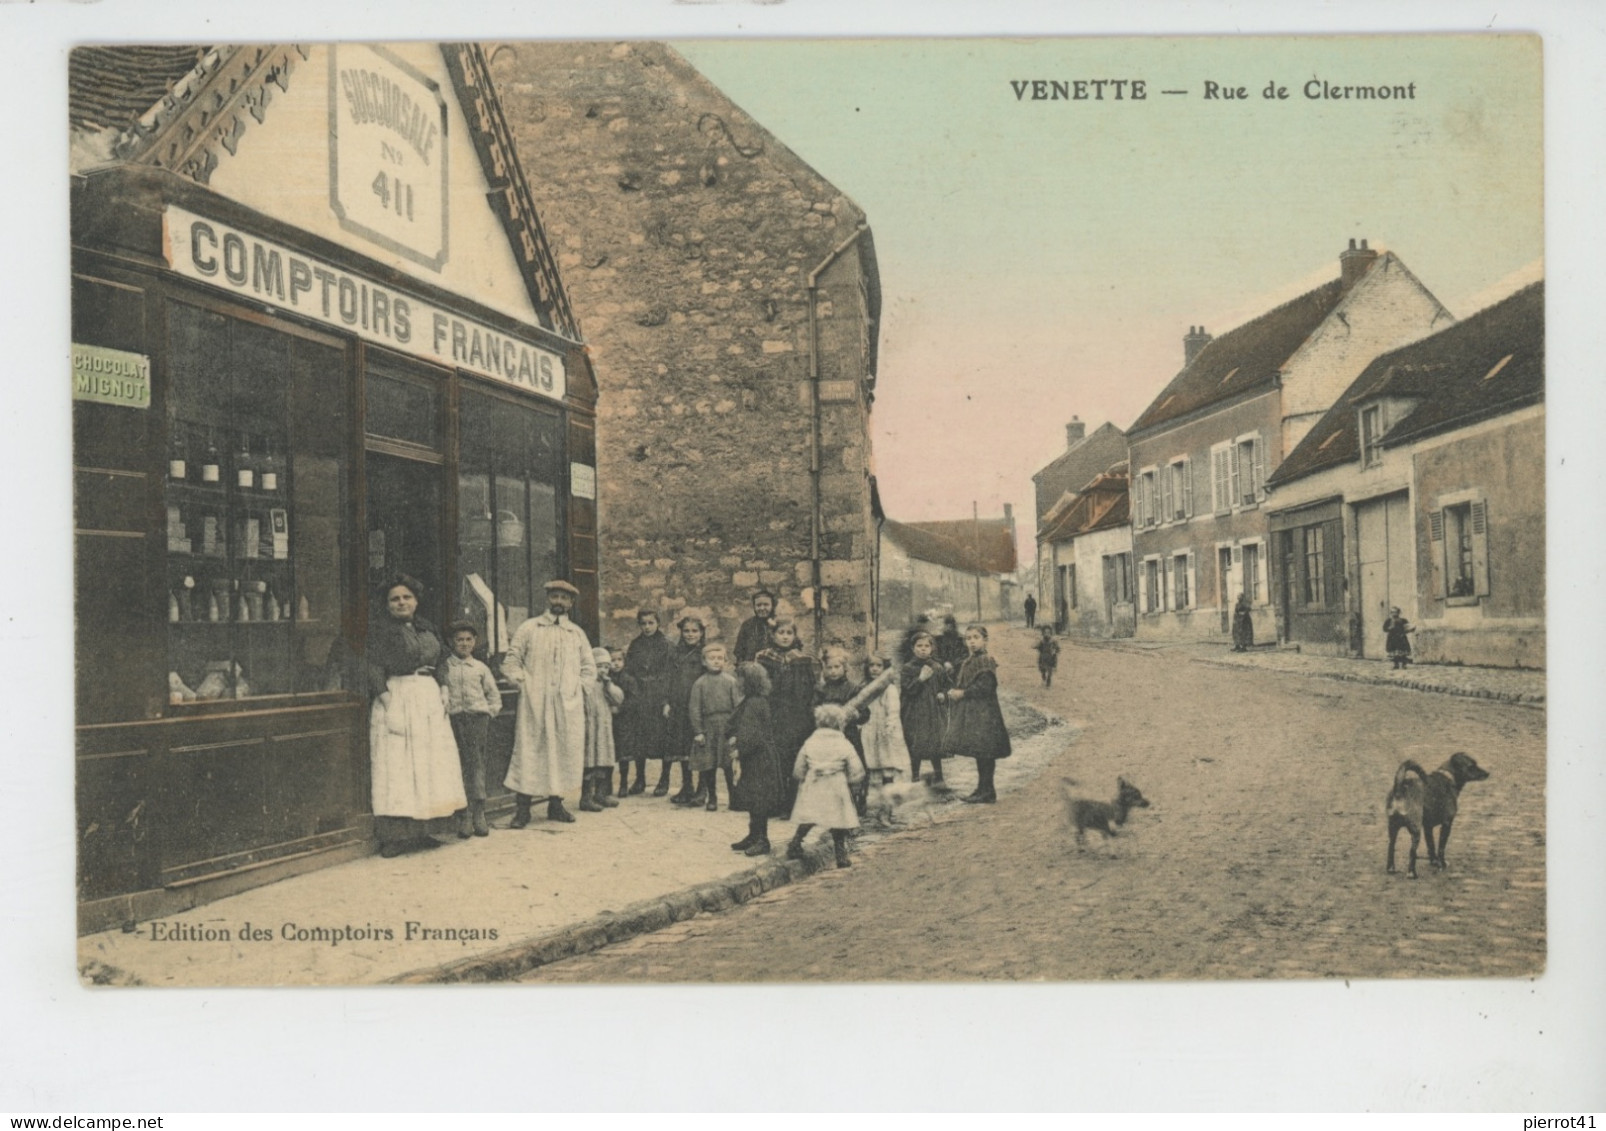 VENETTE - Rue De Clermont - COMPTOIRS FRANÇAIS , Succursale N° 411 - Venette